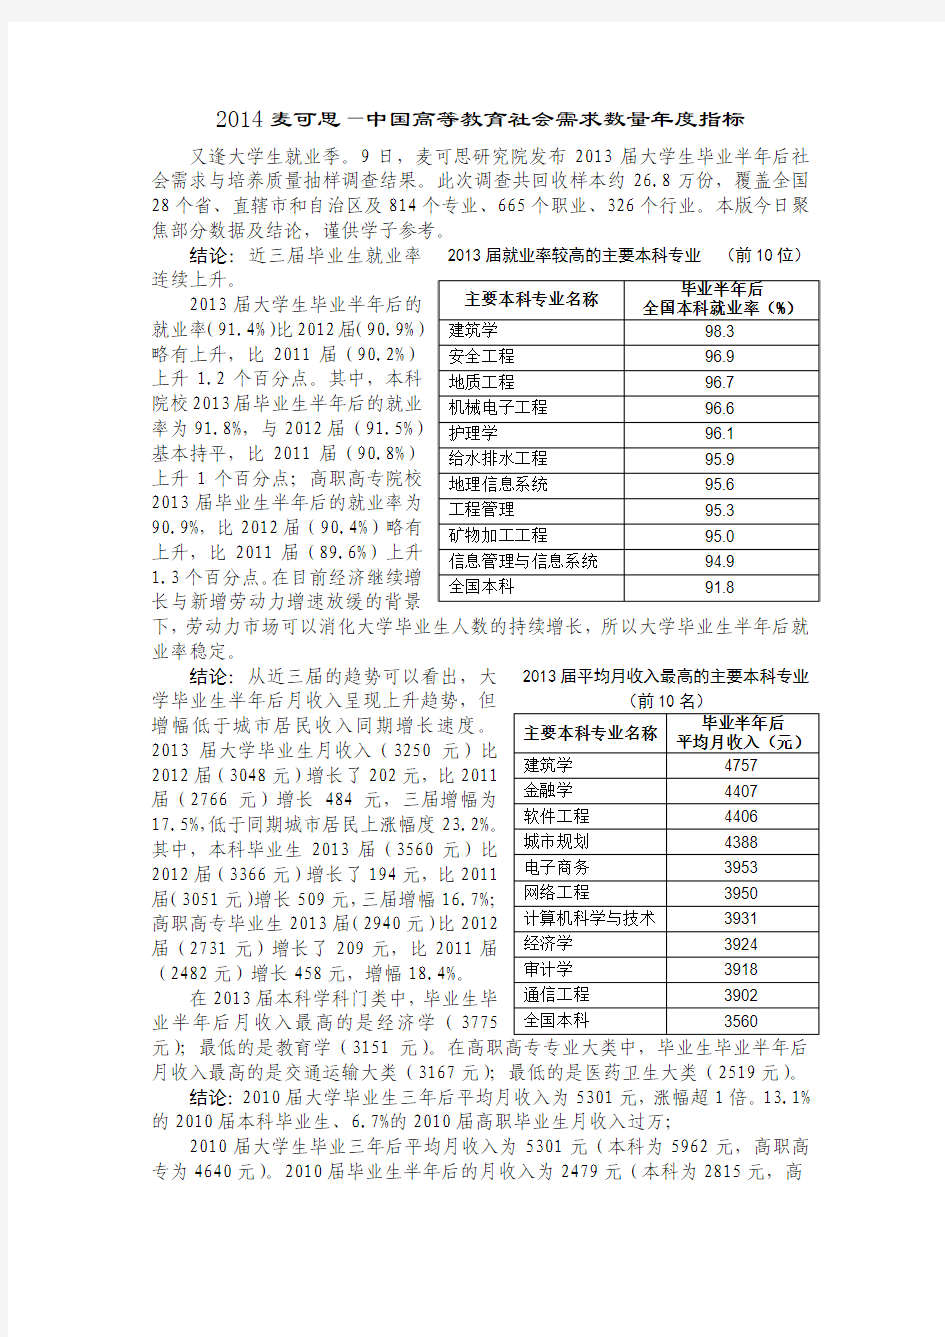 2014中国大学生就业报告发布